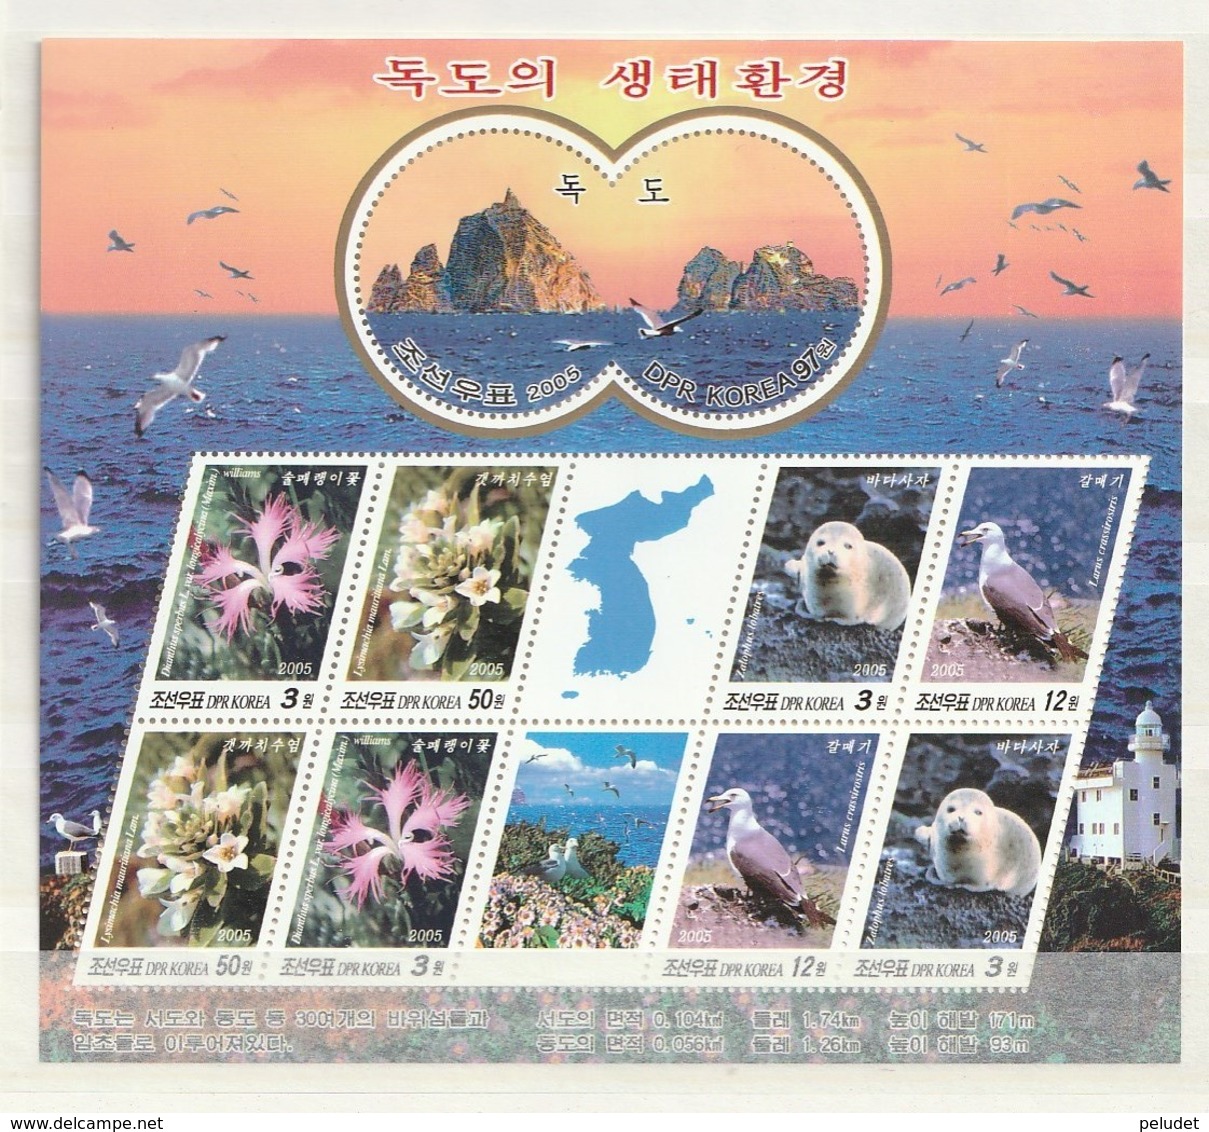 North Korea 2005 Tok Is.-Bird-L'hse-Seal - Flora And Fauna Of Dokdo (9) SHEET **  Mi 4881A-4884AKB, Sn 4433, Yt F3417A - Corea Del Norte